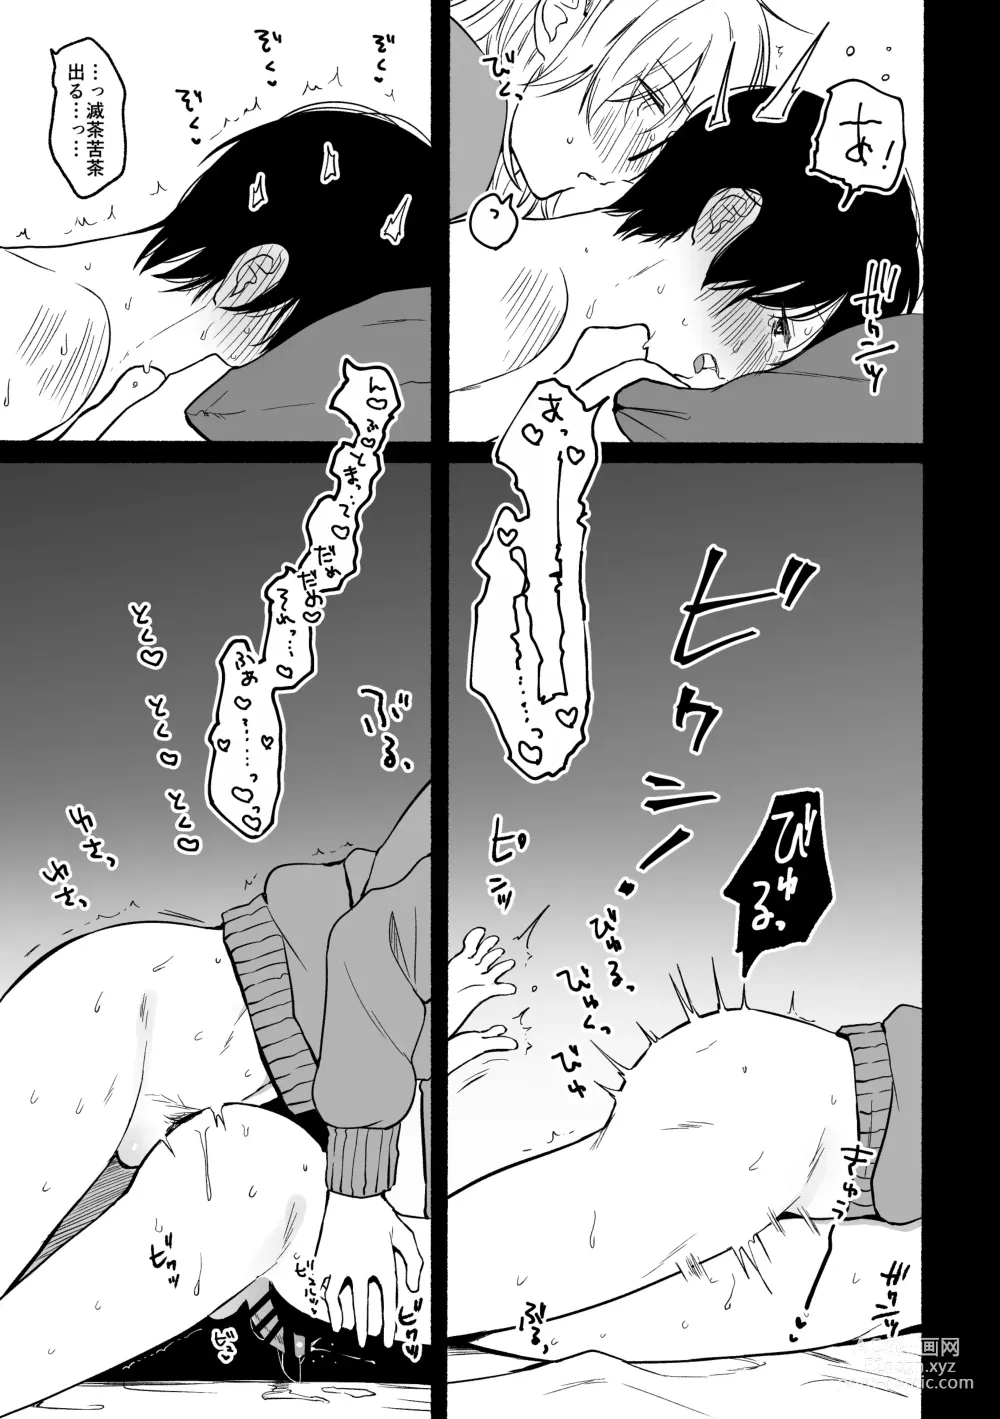 Page 21 of doujinshi Seijinkou Mangakka, Hamedori Haishin Ganbarimasu.